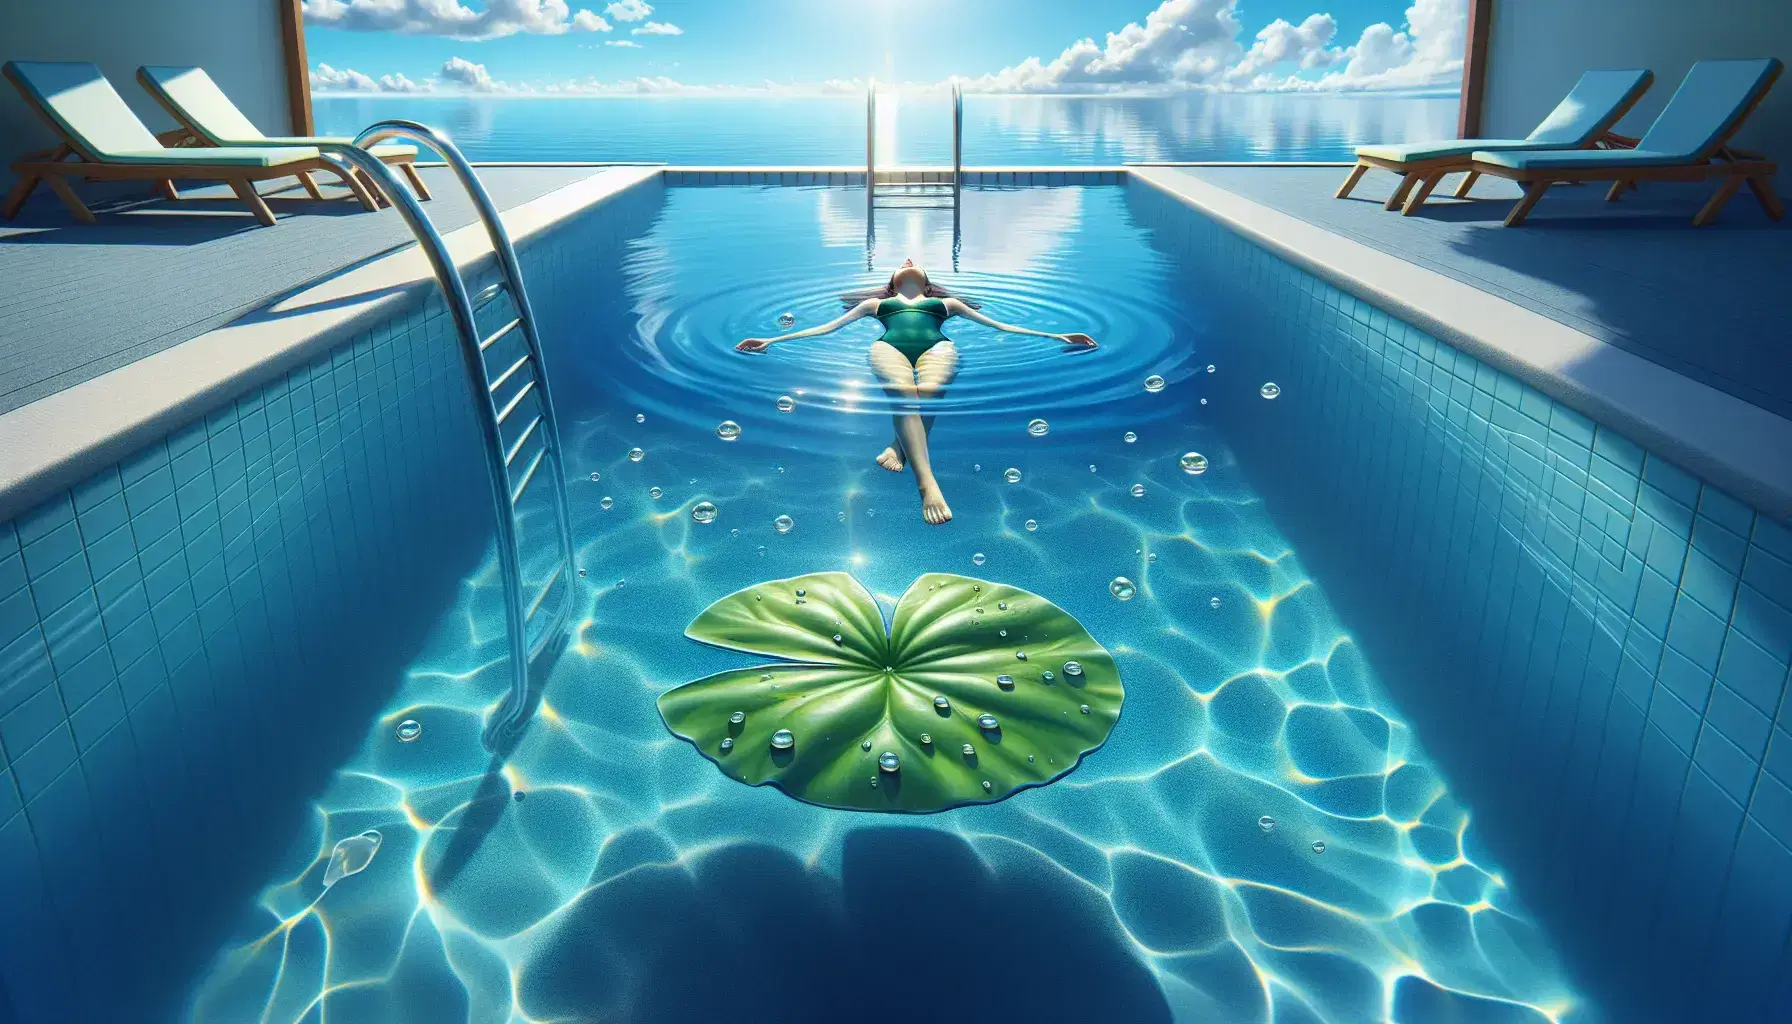 Persona flotando relajadamente en piscina de agua cristalina con cielo azul reflejado, hoja de lirio en primer plano y escalera metálica al borde.